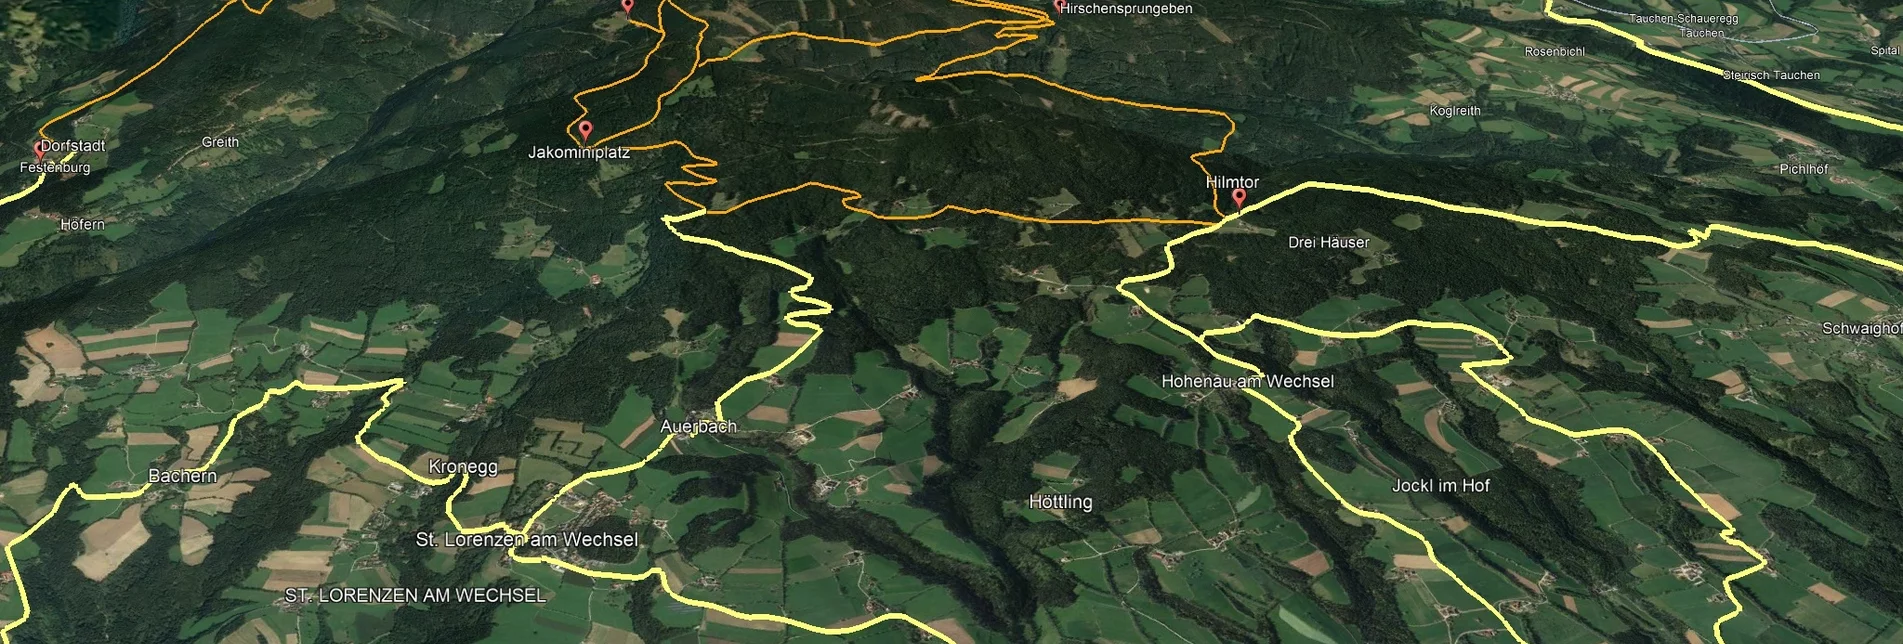 Mountainbike VORSCHAU Steirische Wexl Trails - Vorauer Schwaig Trail - Touren-Impression #1 | © Verein Tourismusentwicklung Steirischer Wechsel